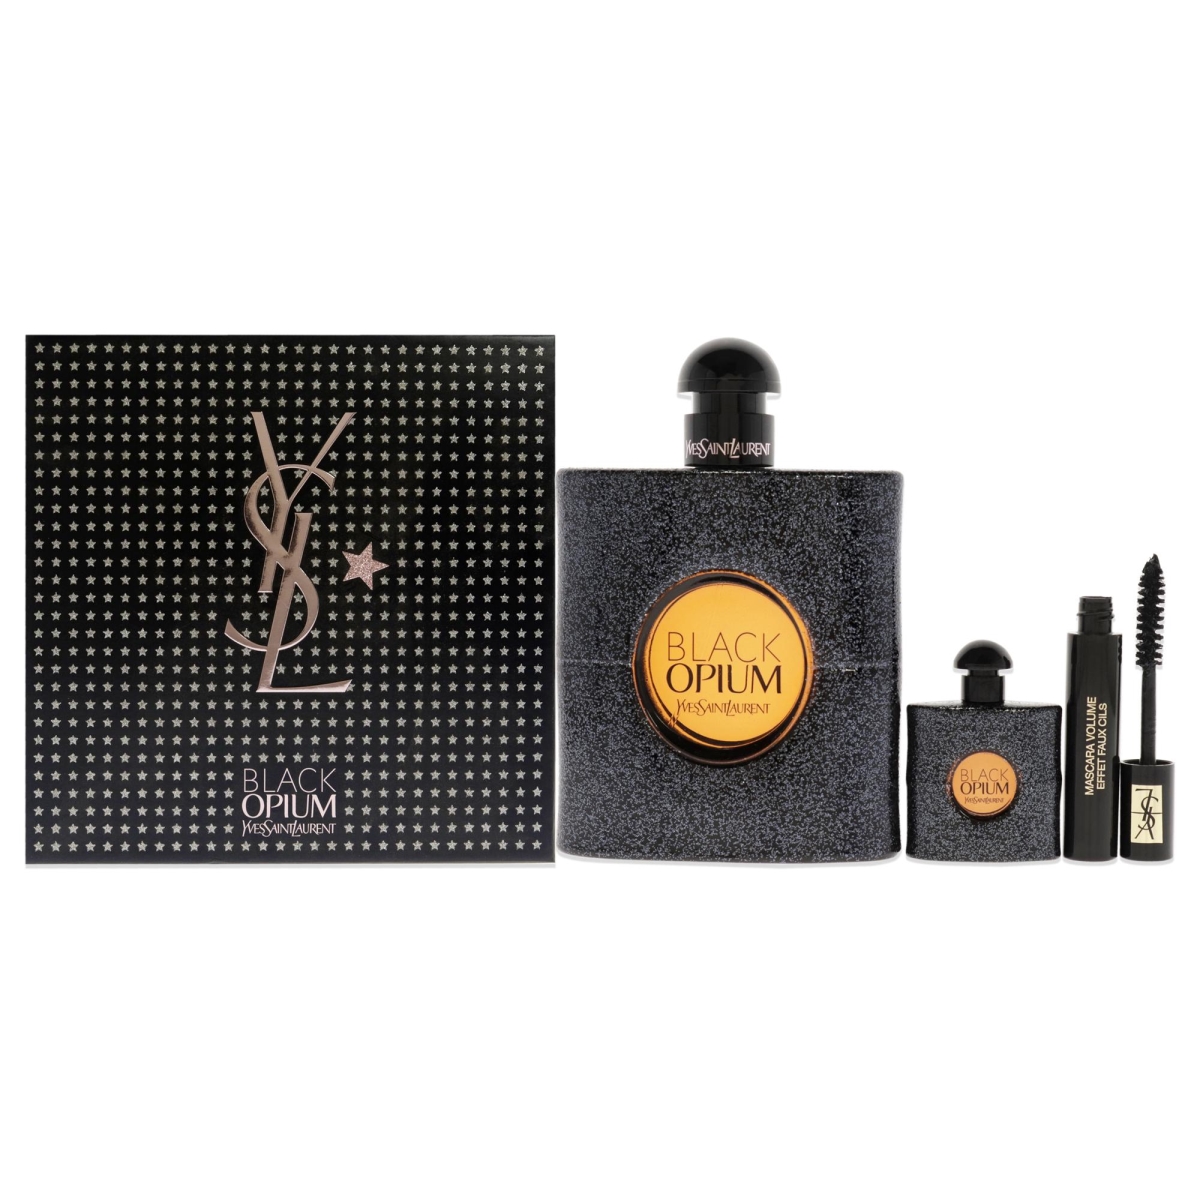 Yves Saint Laurent I0097341 Black Opium Gift Set for Women - 3 Piece